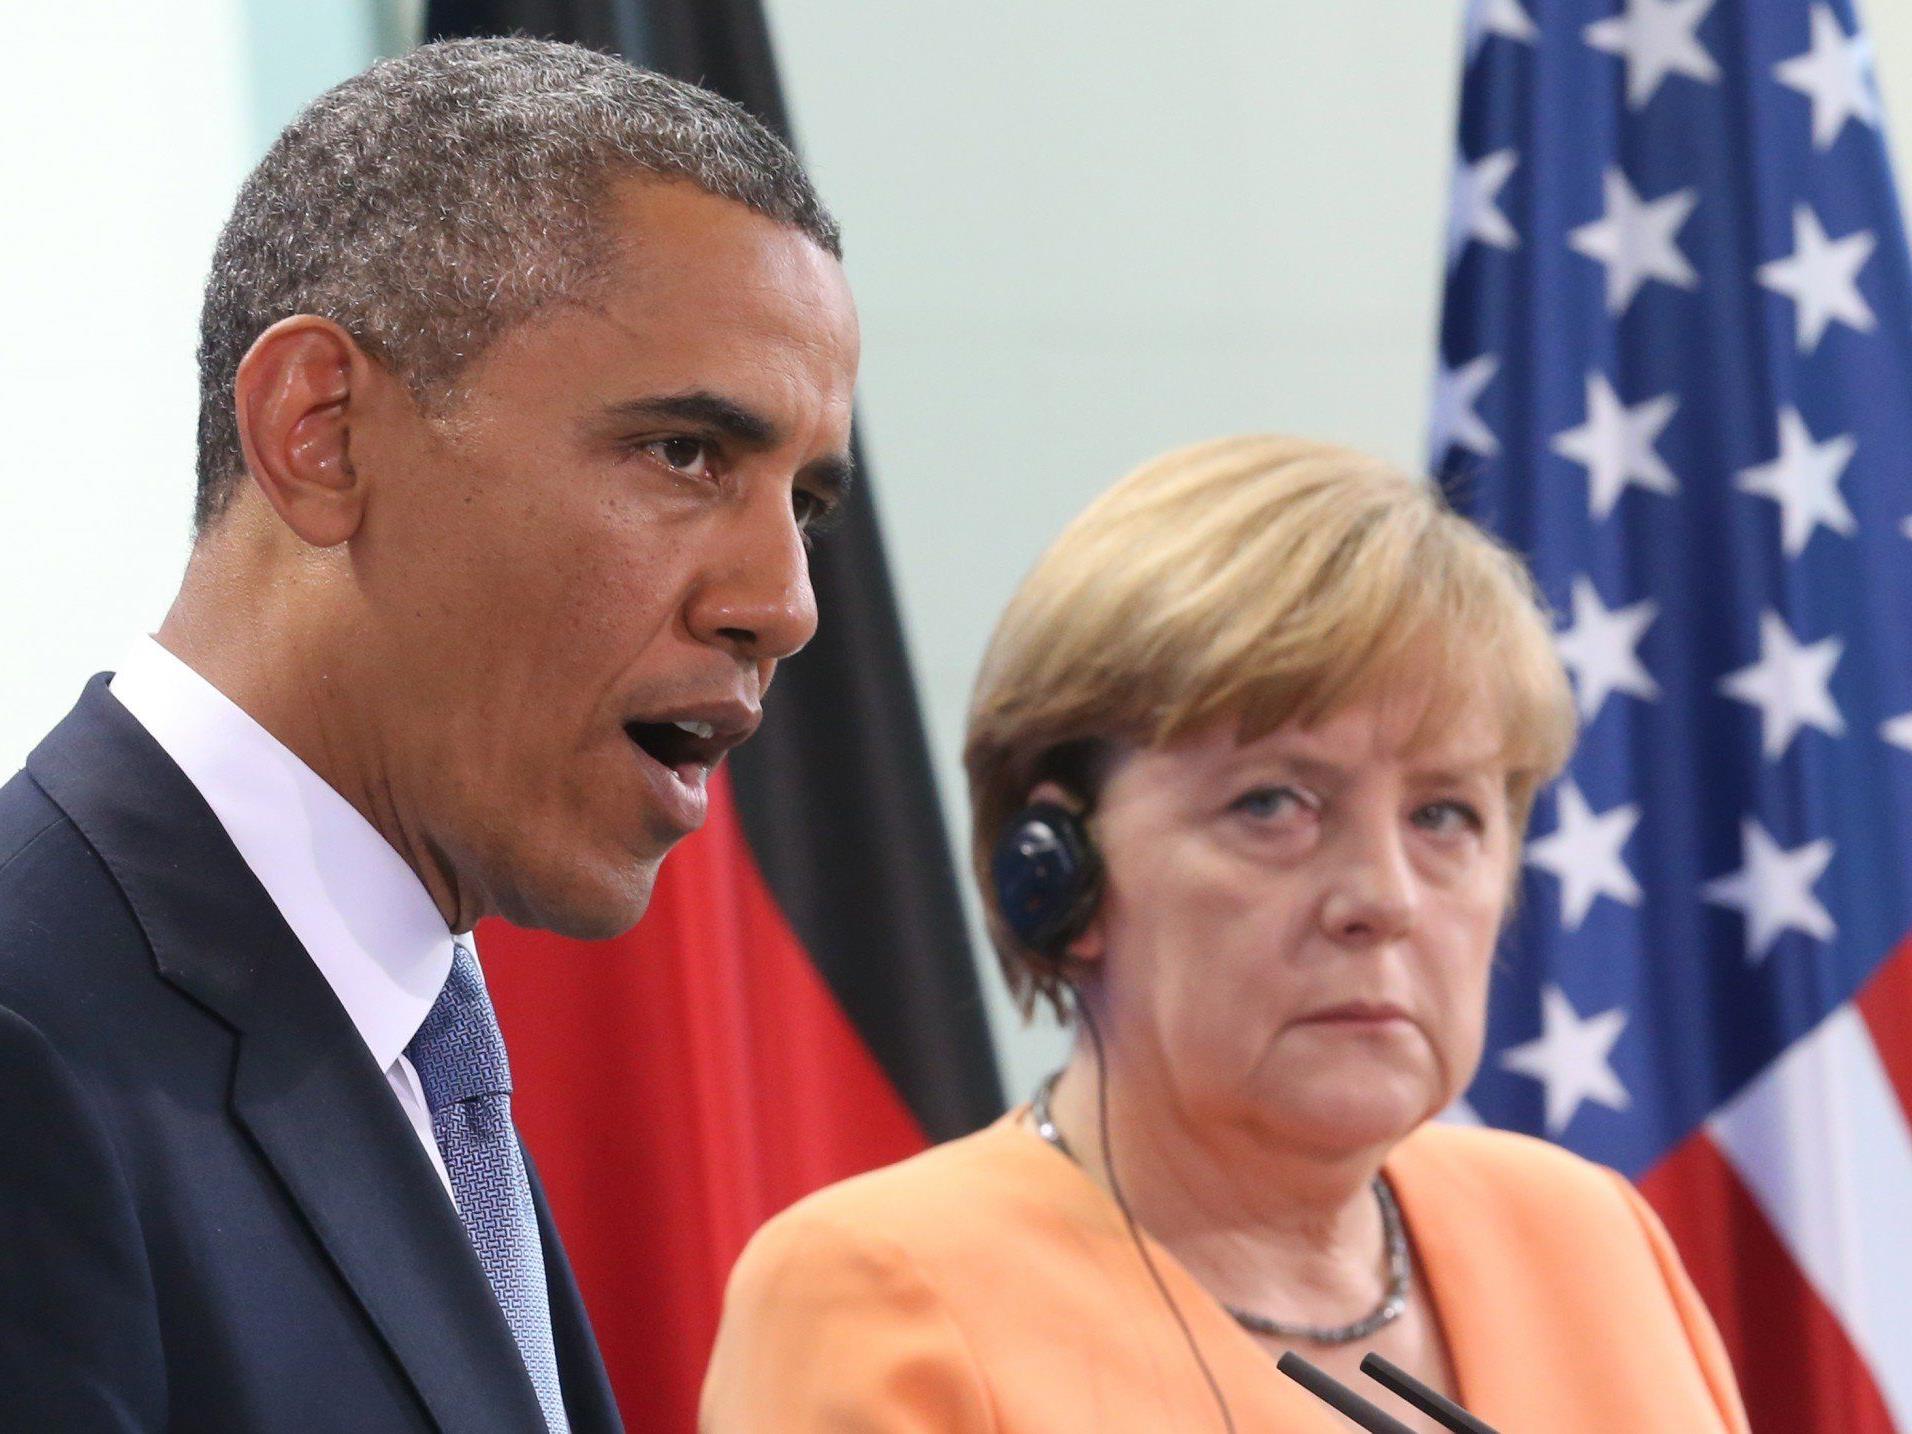 Medien: Merkel seit 2002 abgehört - Obama entschuldigte sich in Handy-Affäre.